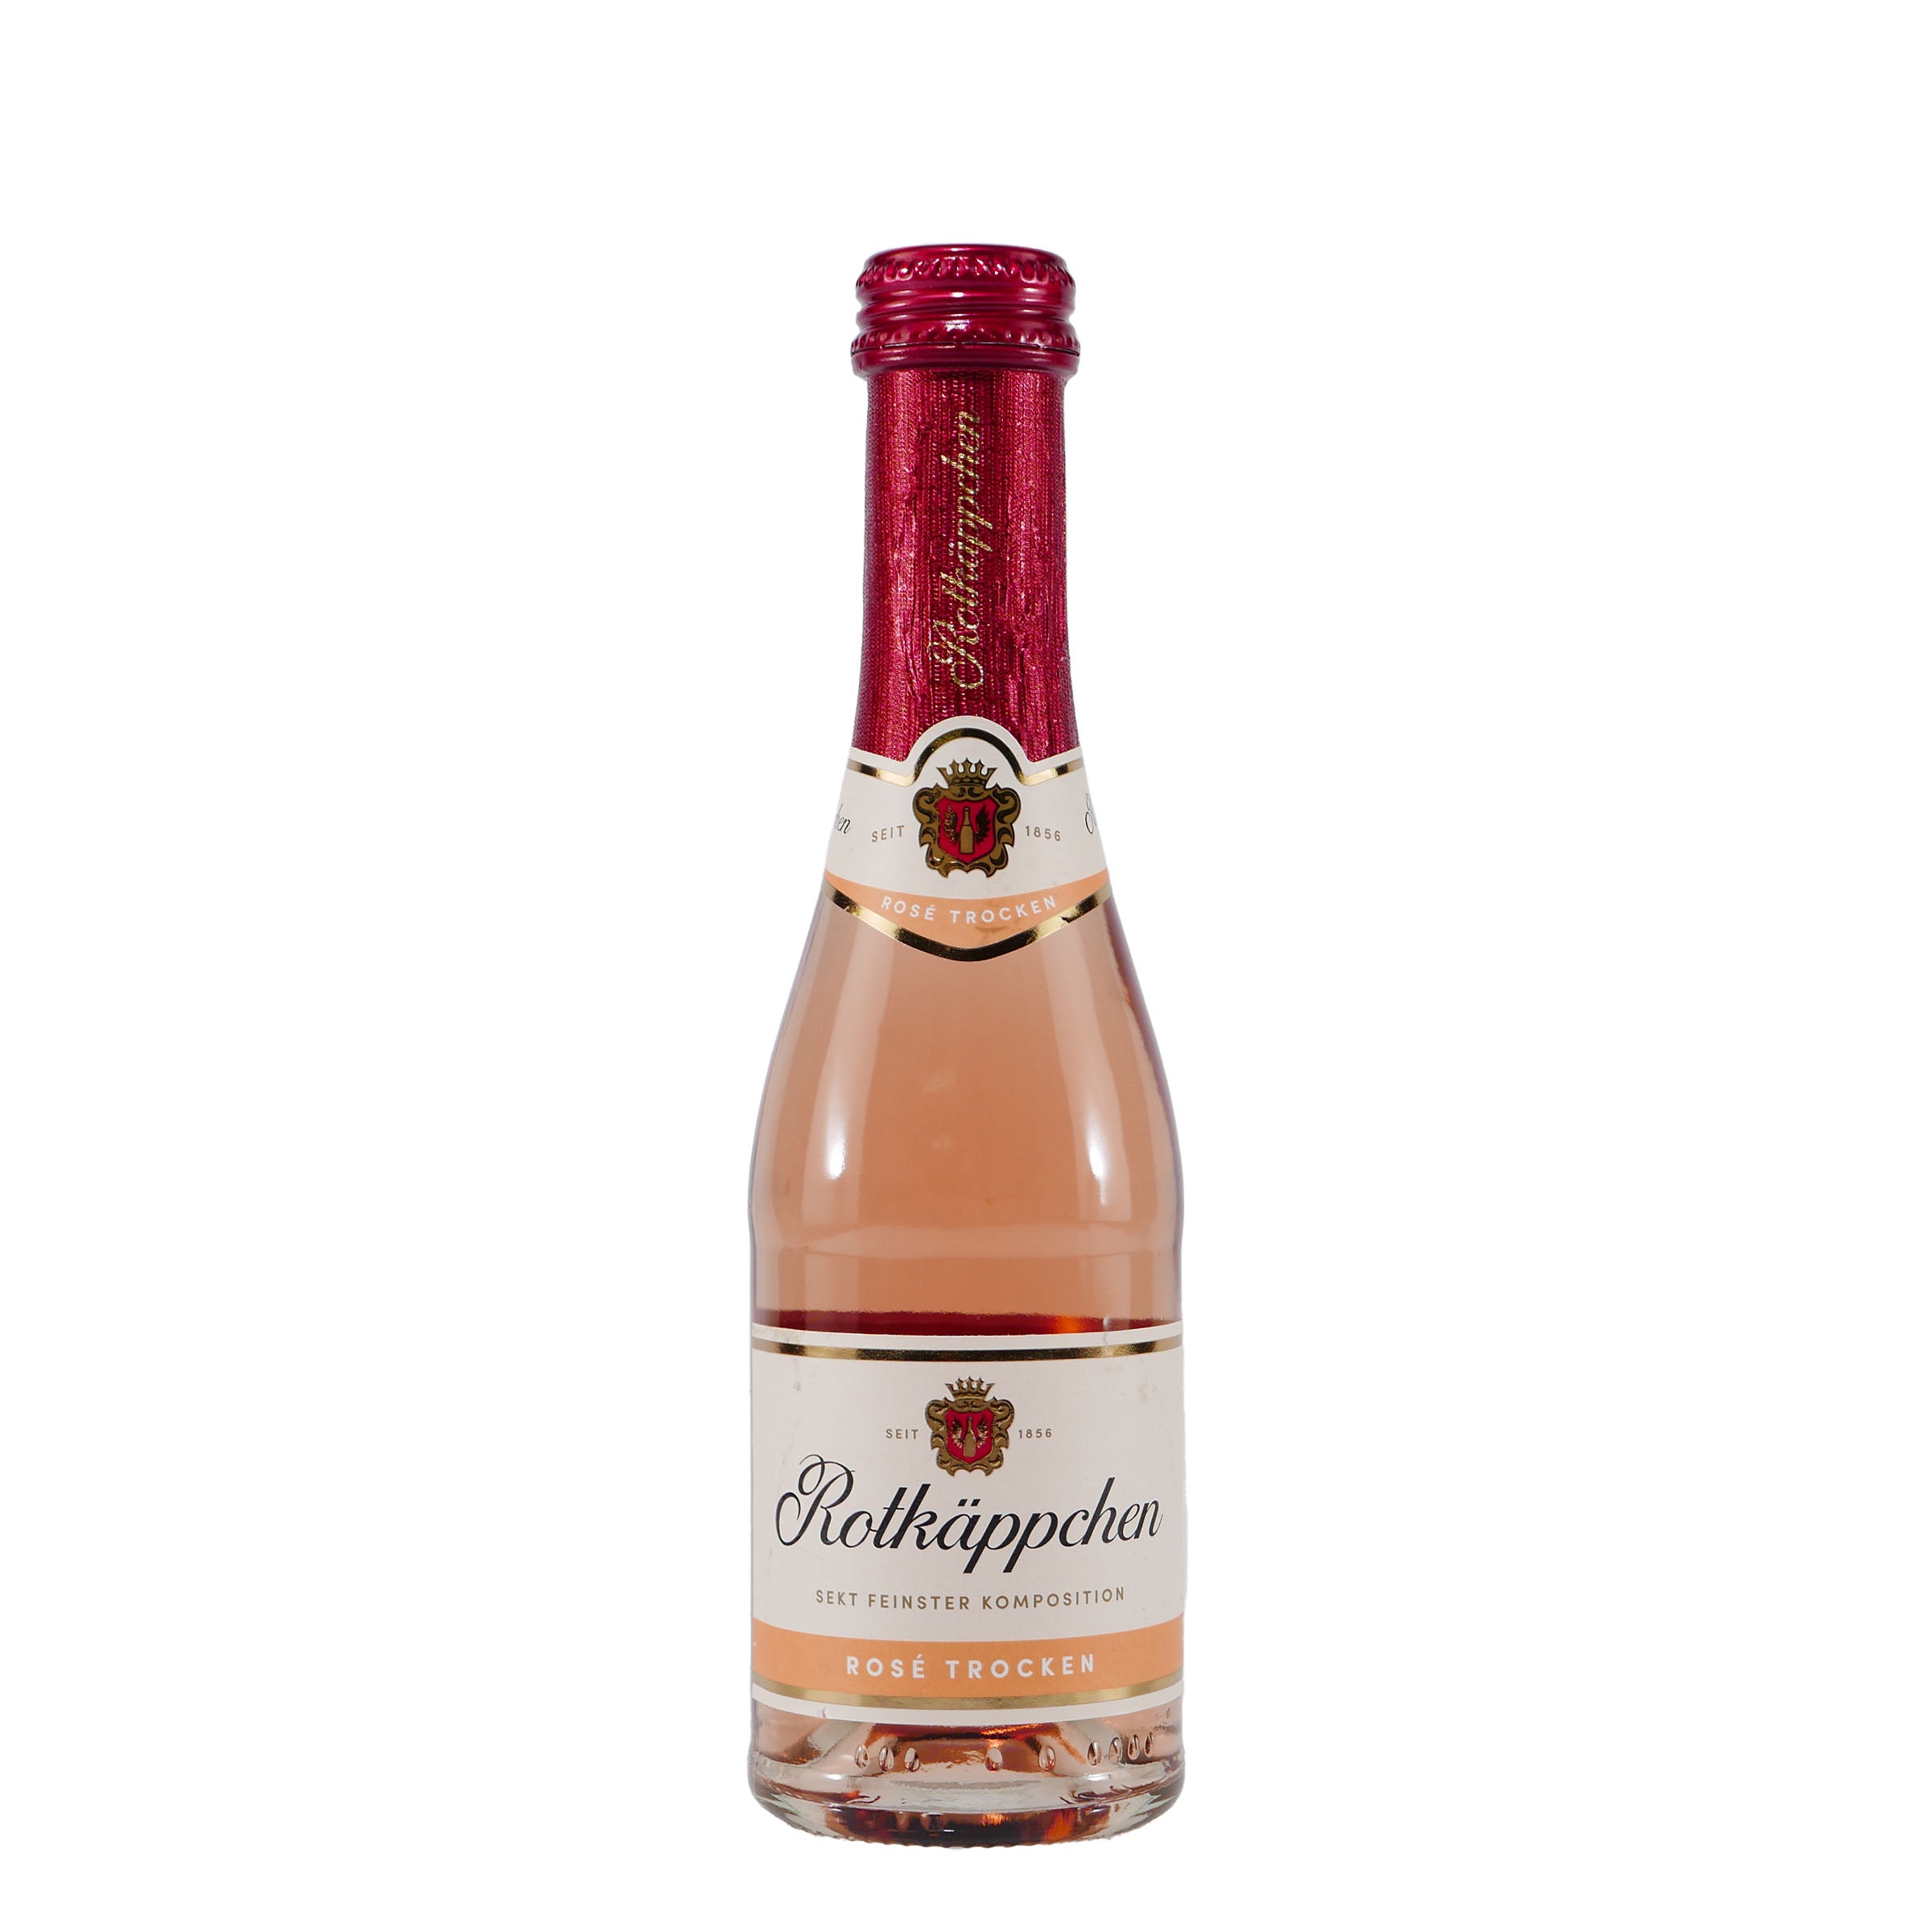 Getränke & Online Spirituosen Sekt in Gute-Freunde Fruchtiger Rosé Shop Genuss | praktischer Trocken Rotkäppchen - Flaschengröße 0,2L